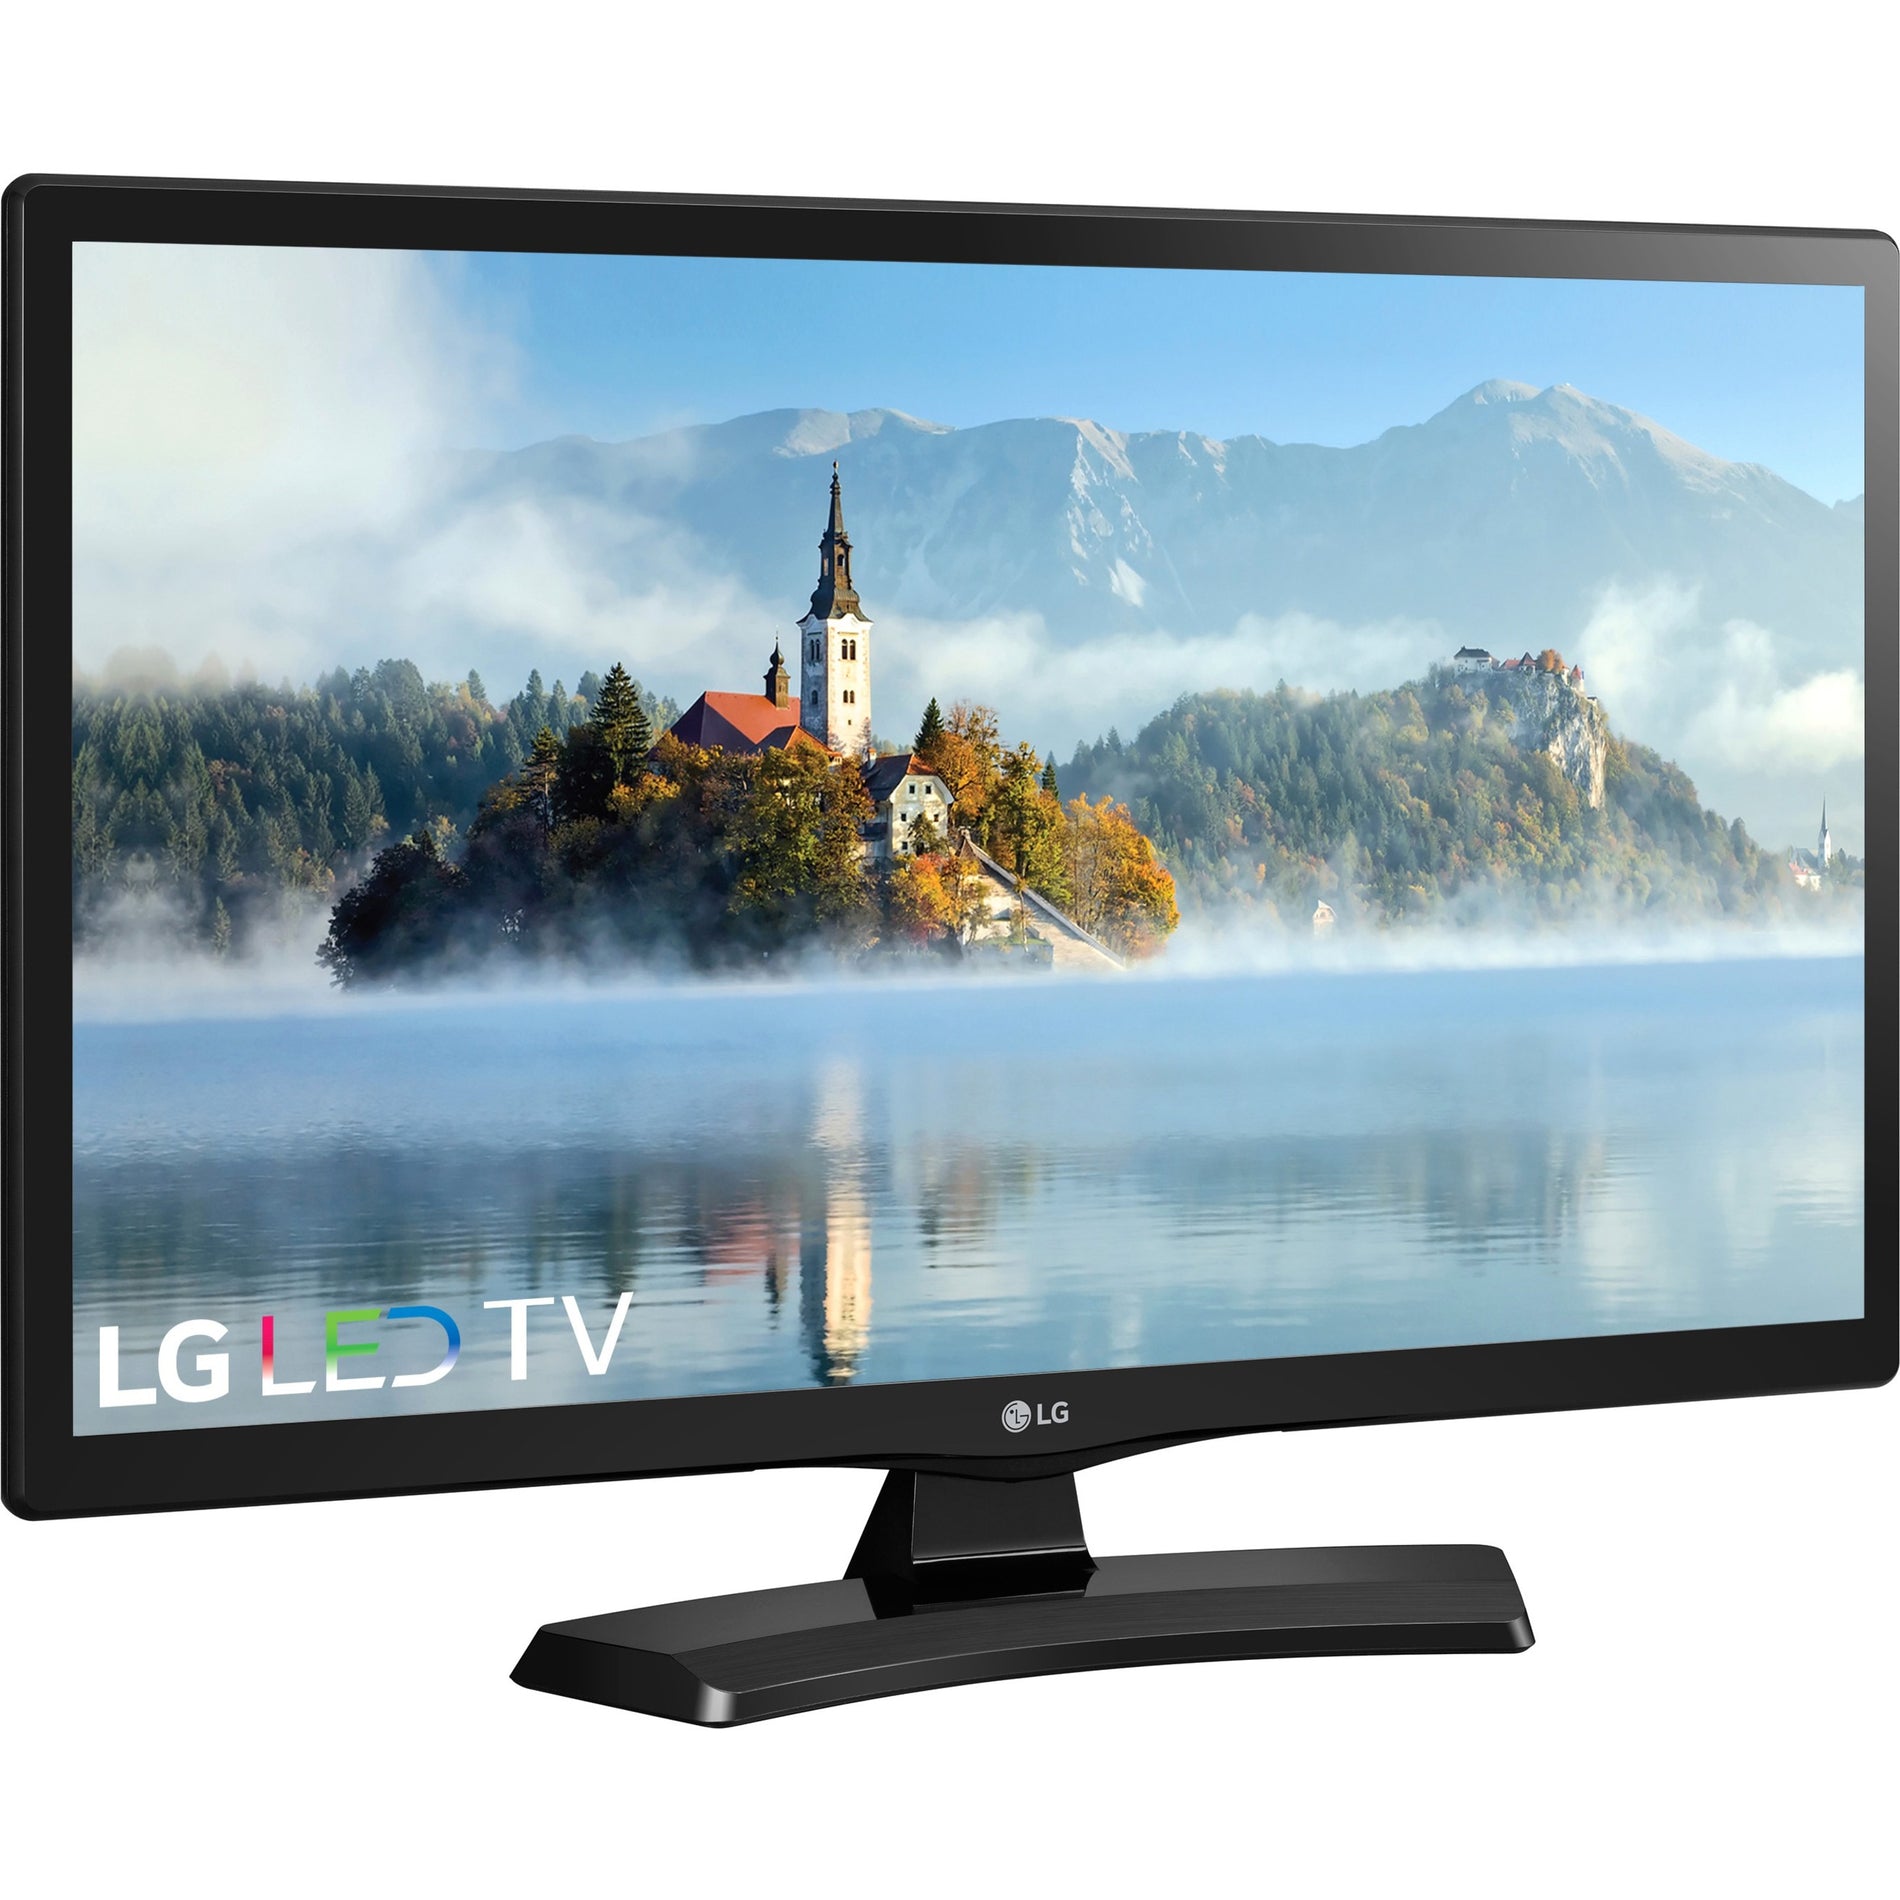 LG 24LJ4540 24" LED-LCD TV, HDTV, LED Backlight, 1366 x 768 Resolution